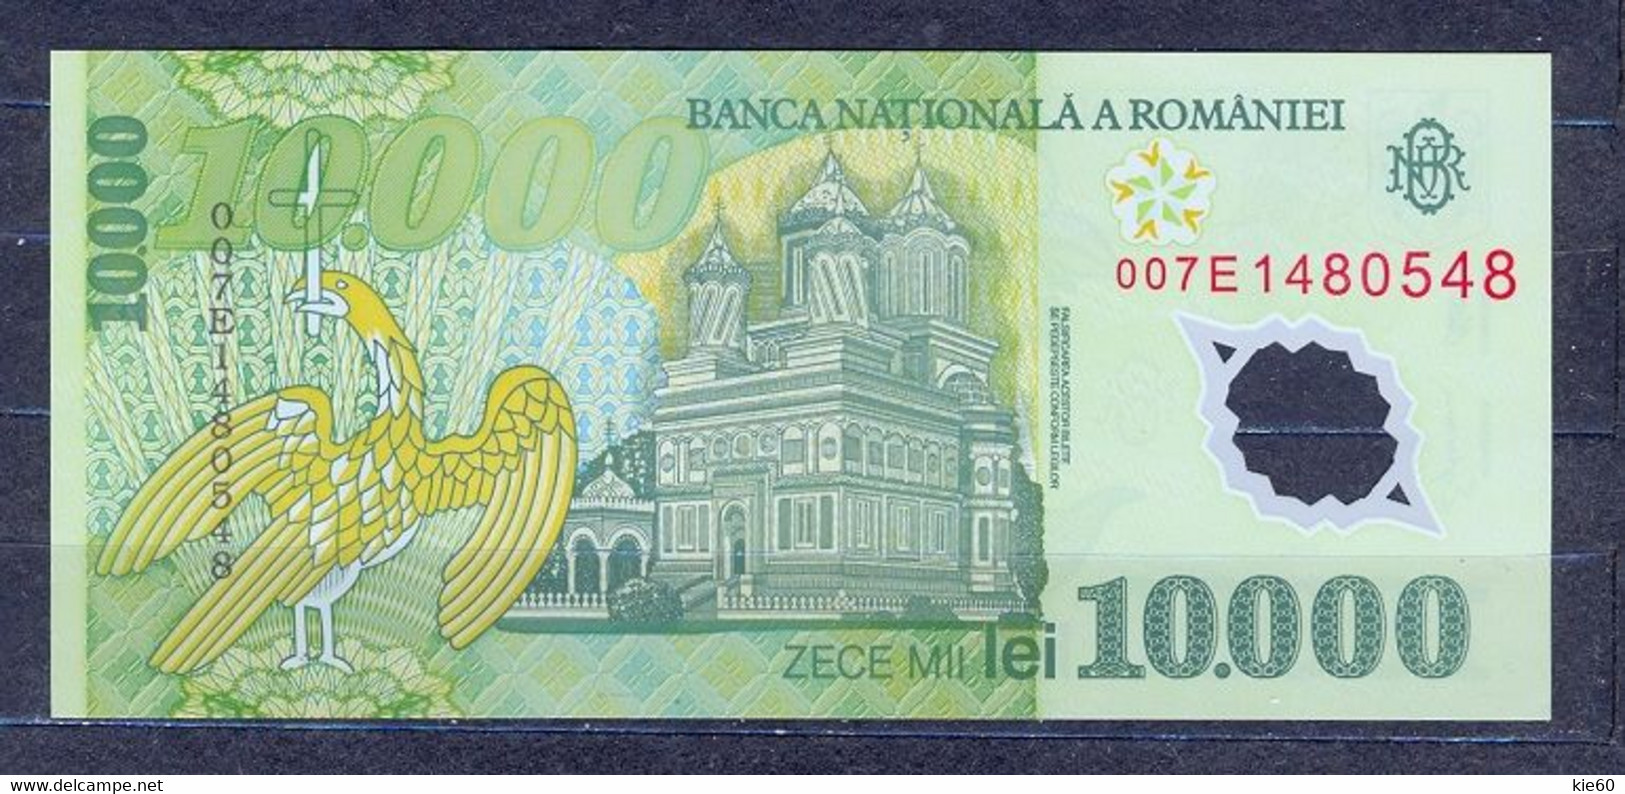 Romania  - 2000  - 10 000  Lei ....P112a...UNC - Roumanie